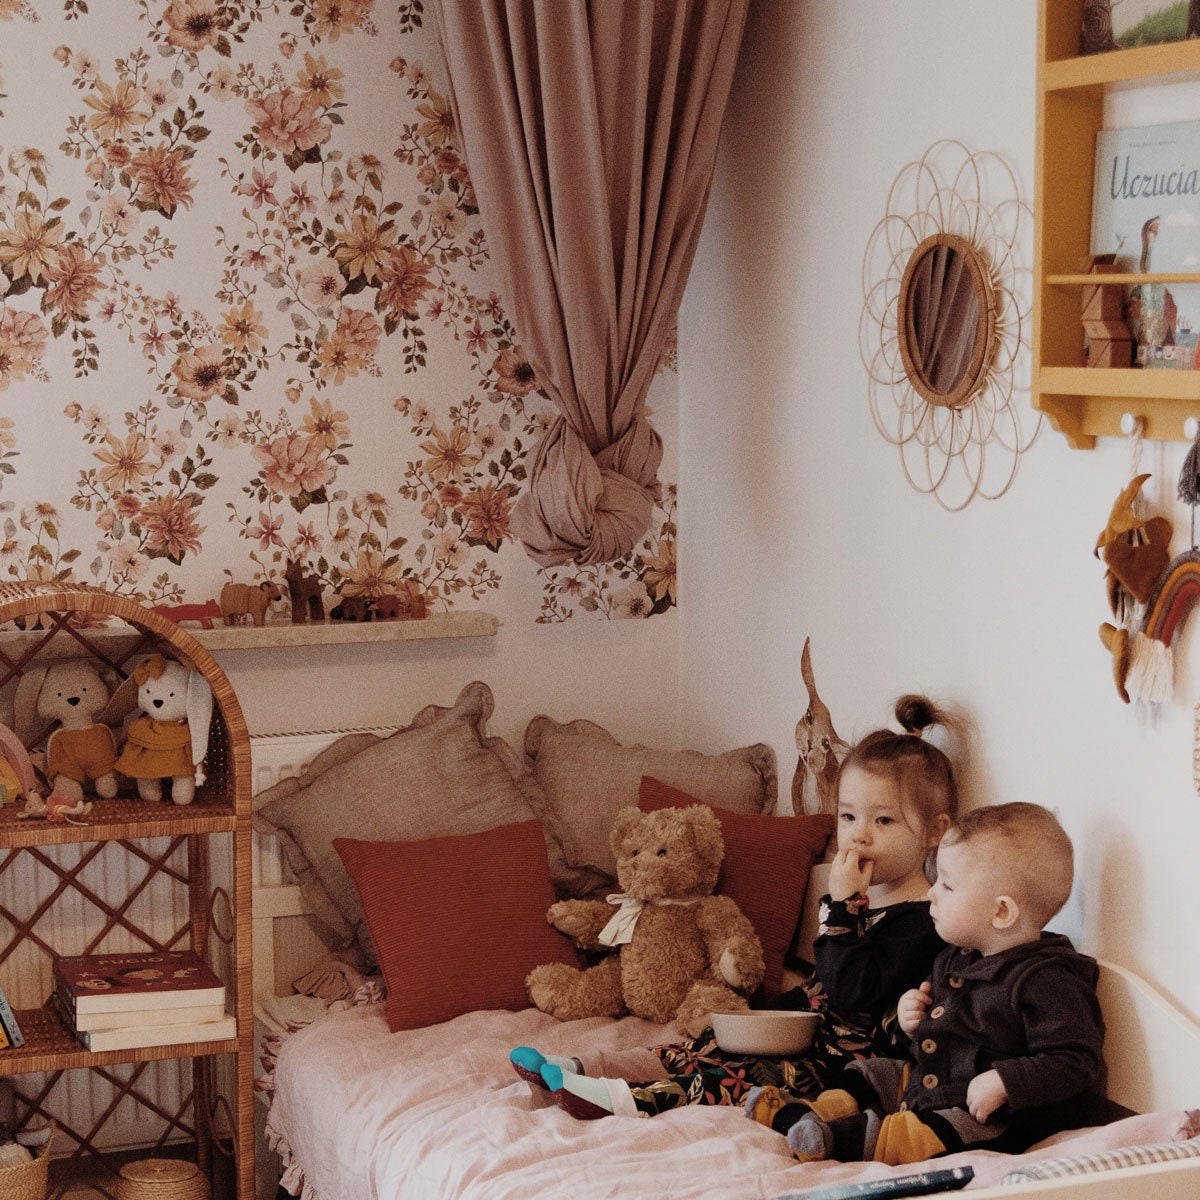 Papel pintado Floral Vintage para habitaciones infantiles - Dekornik